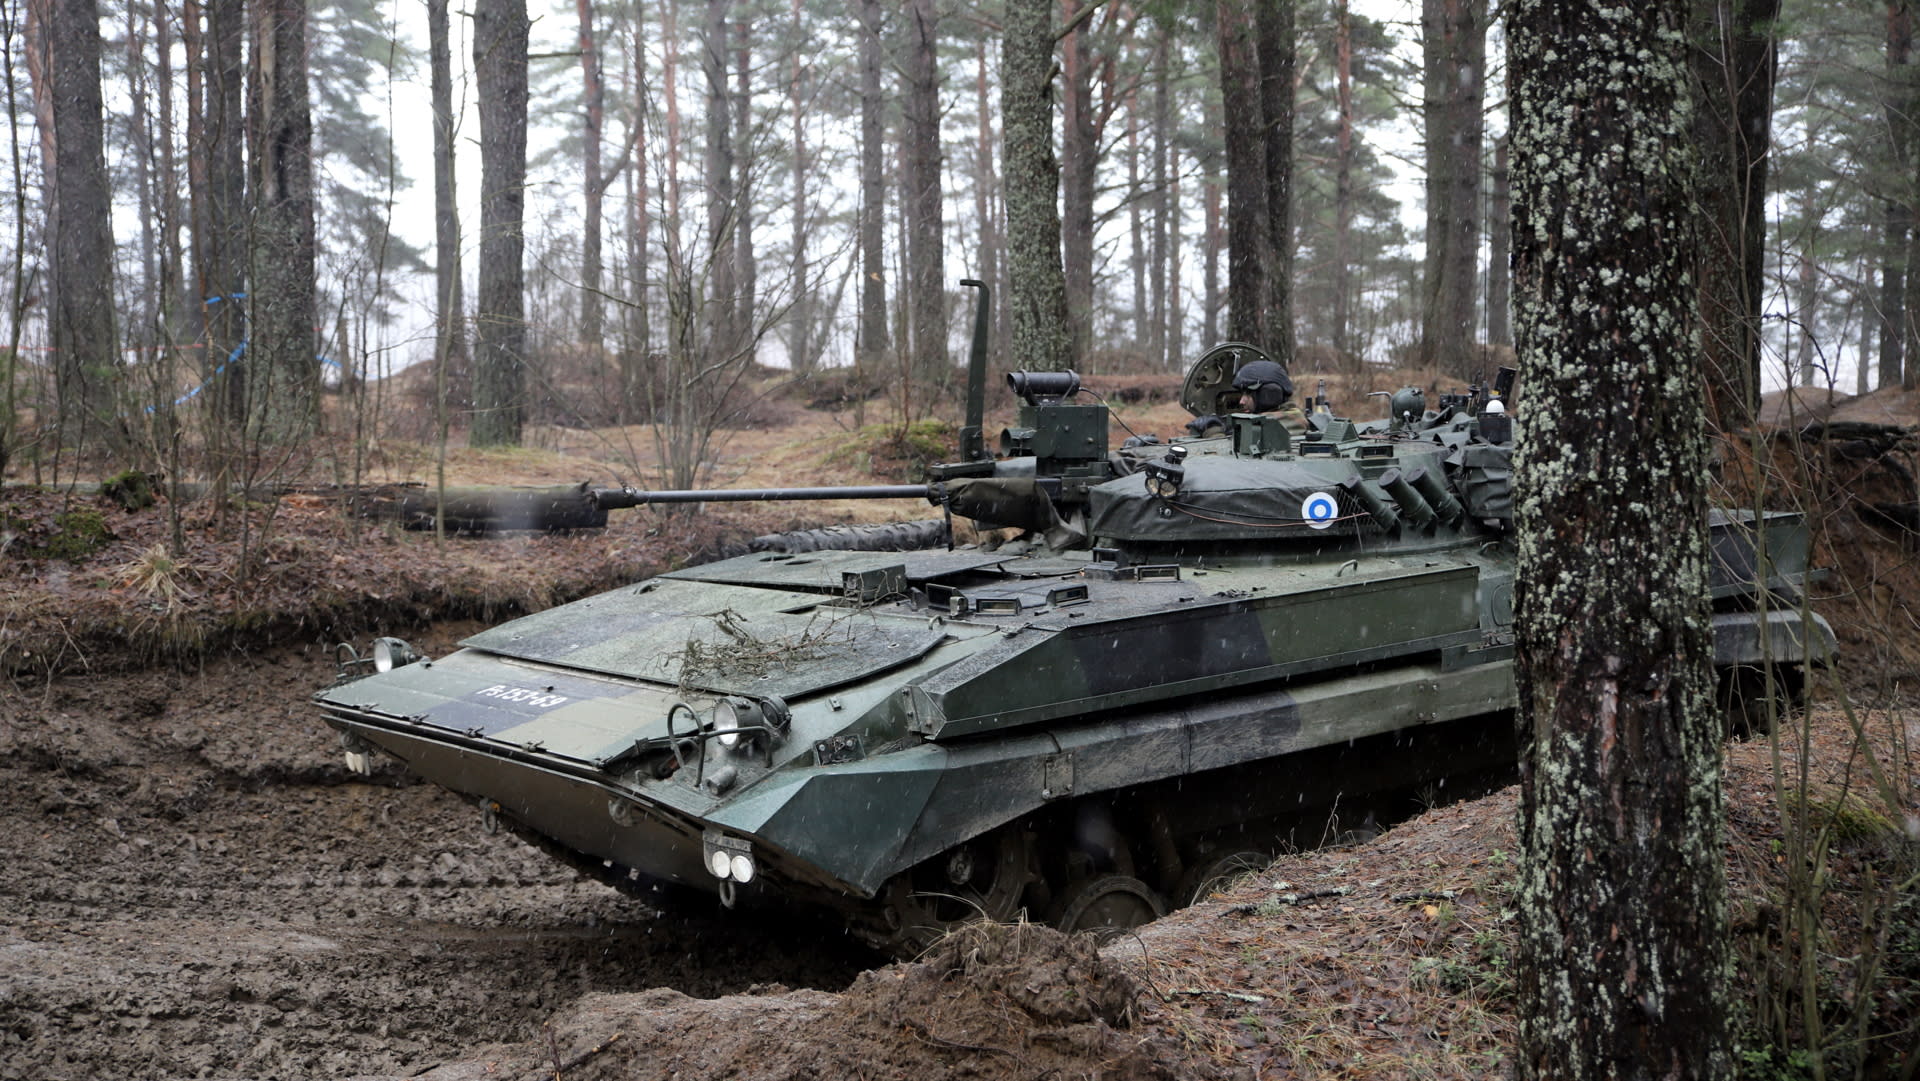 Chocan dos tanques durante un ejercicio militar en Finlandia